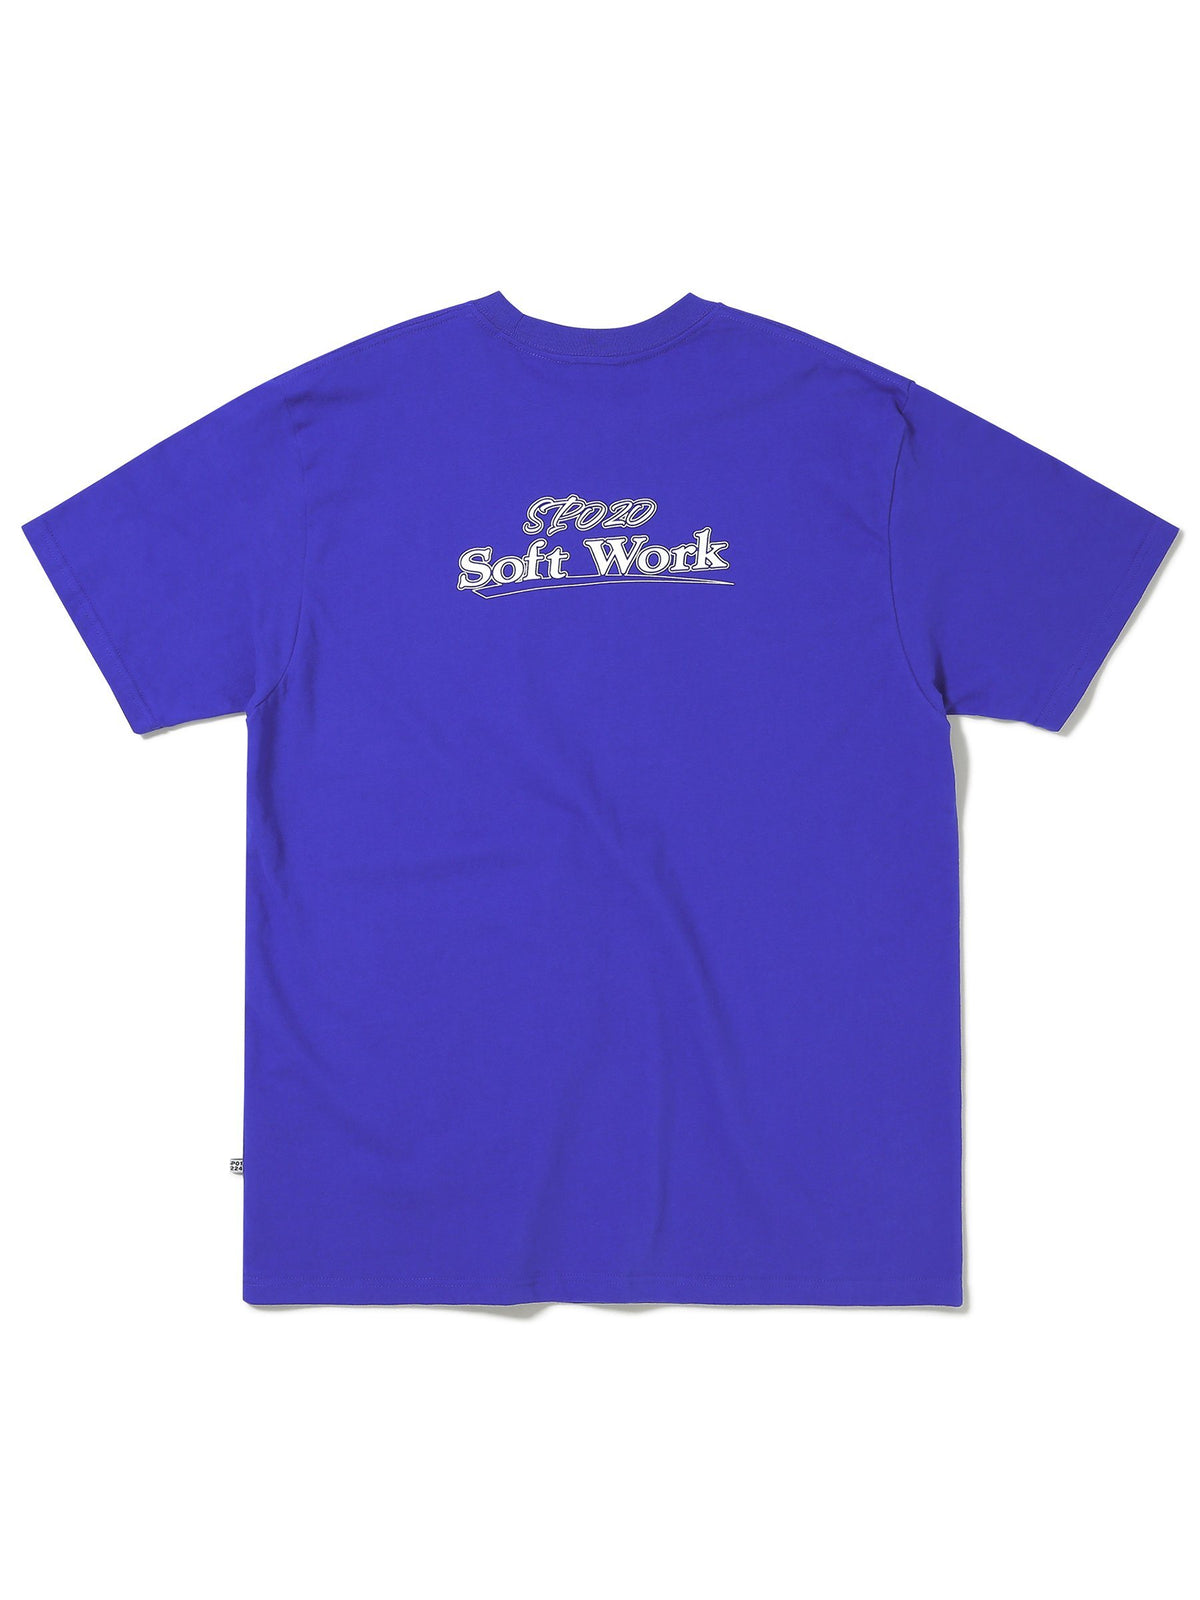 SOFT WORK Tee T-Shirt 